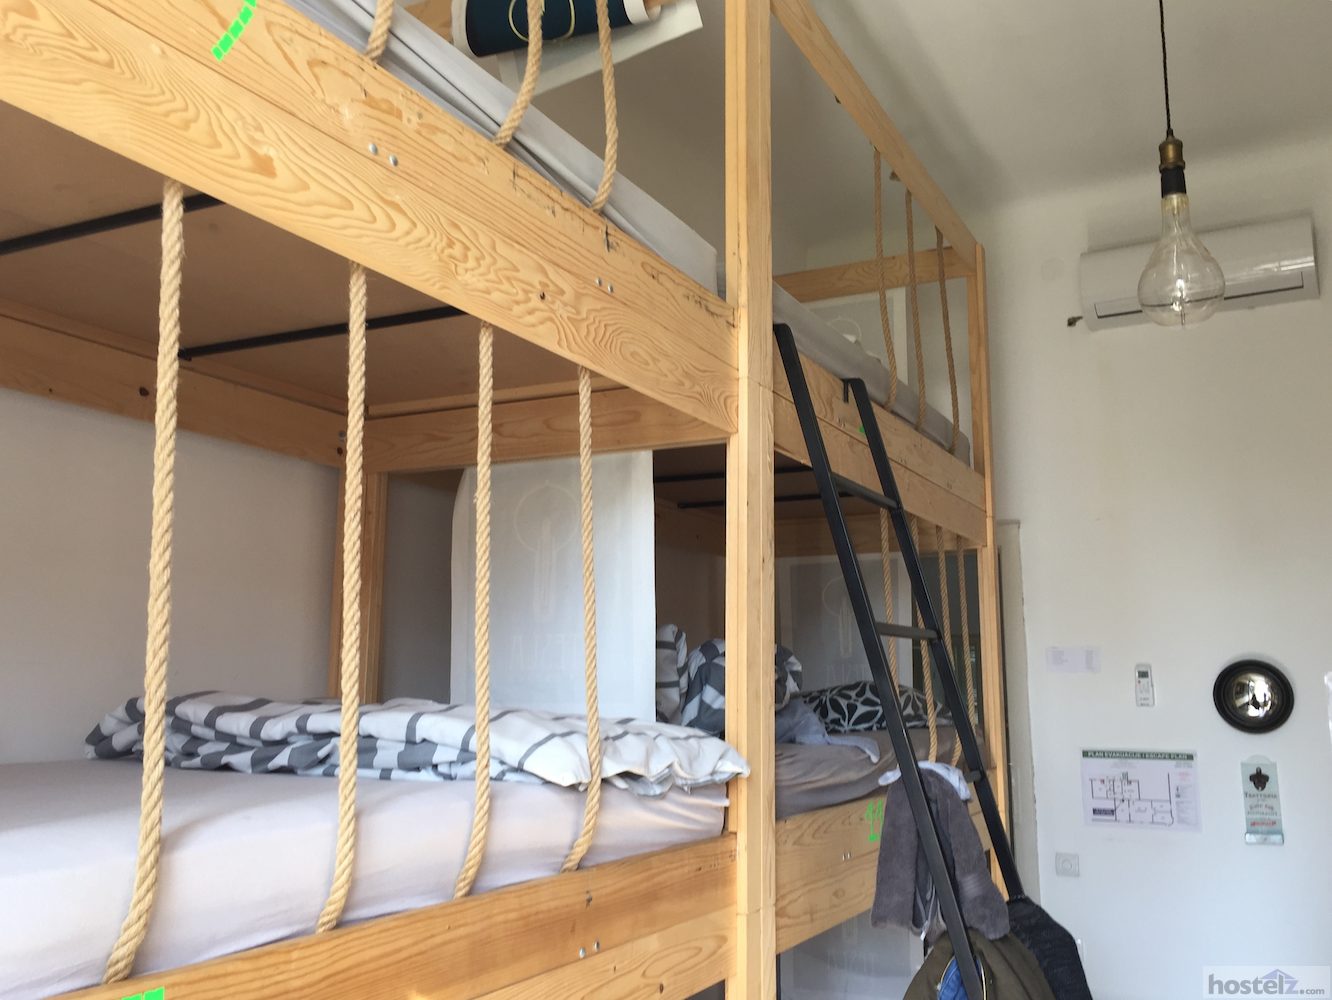 Triple bunks in the dorm